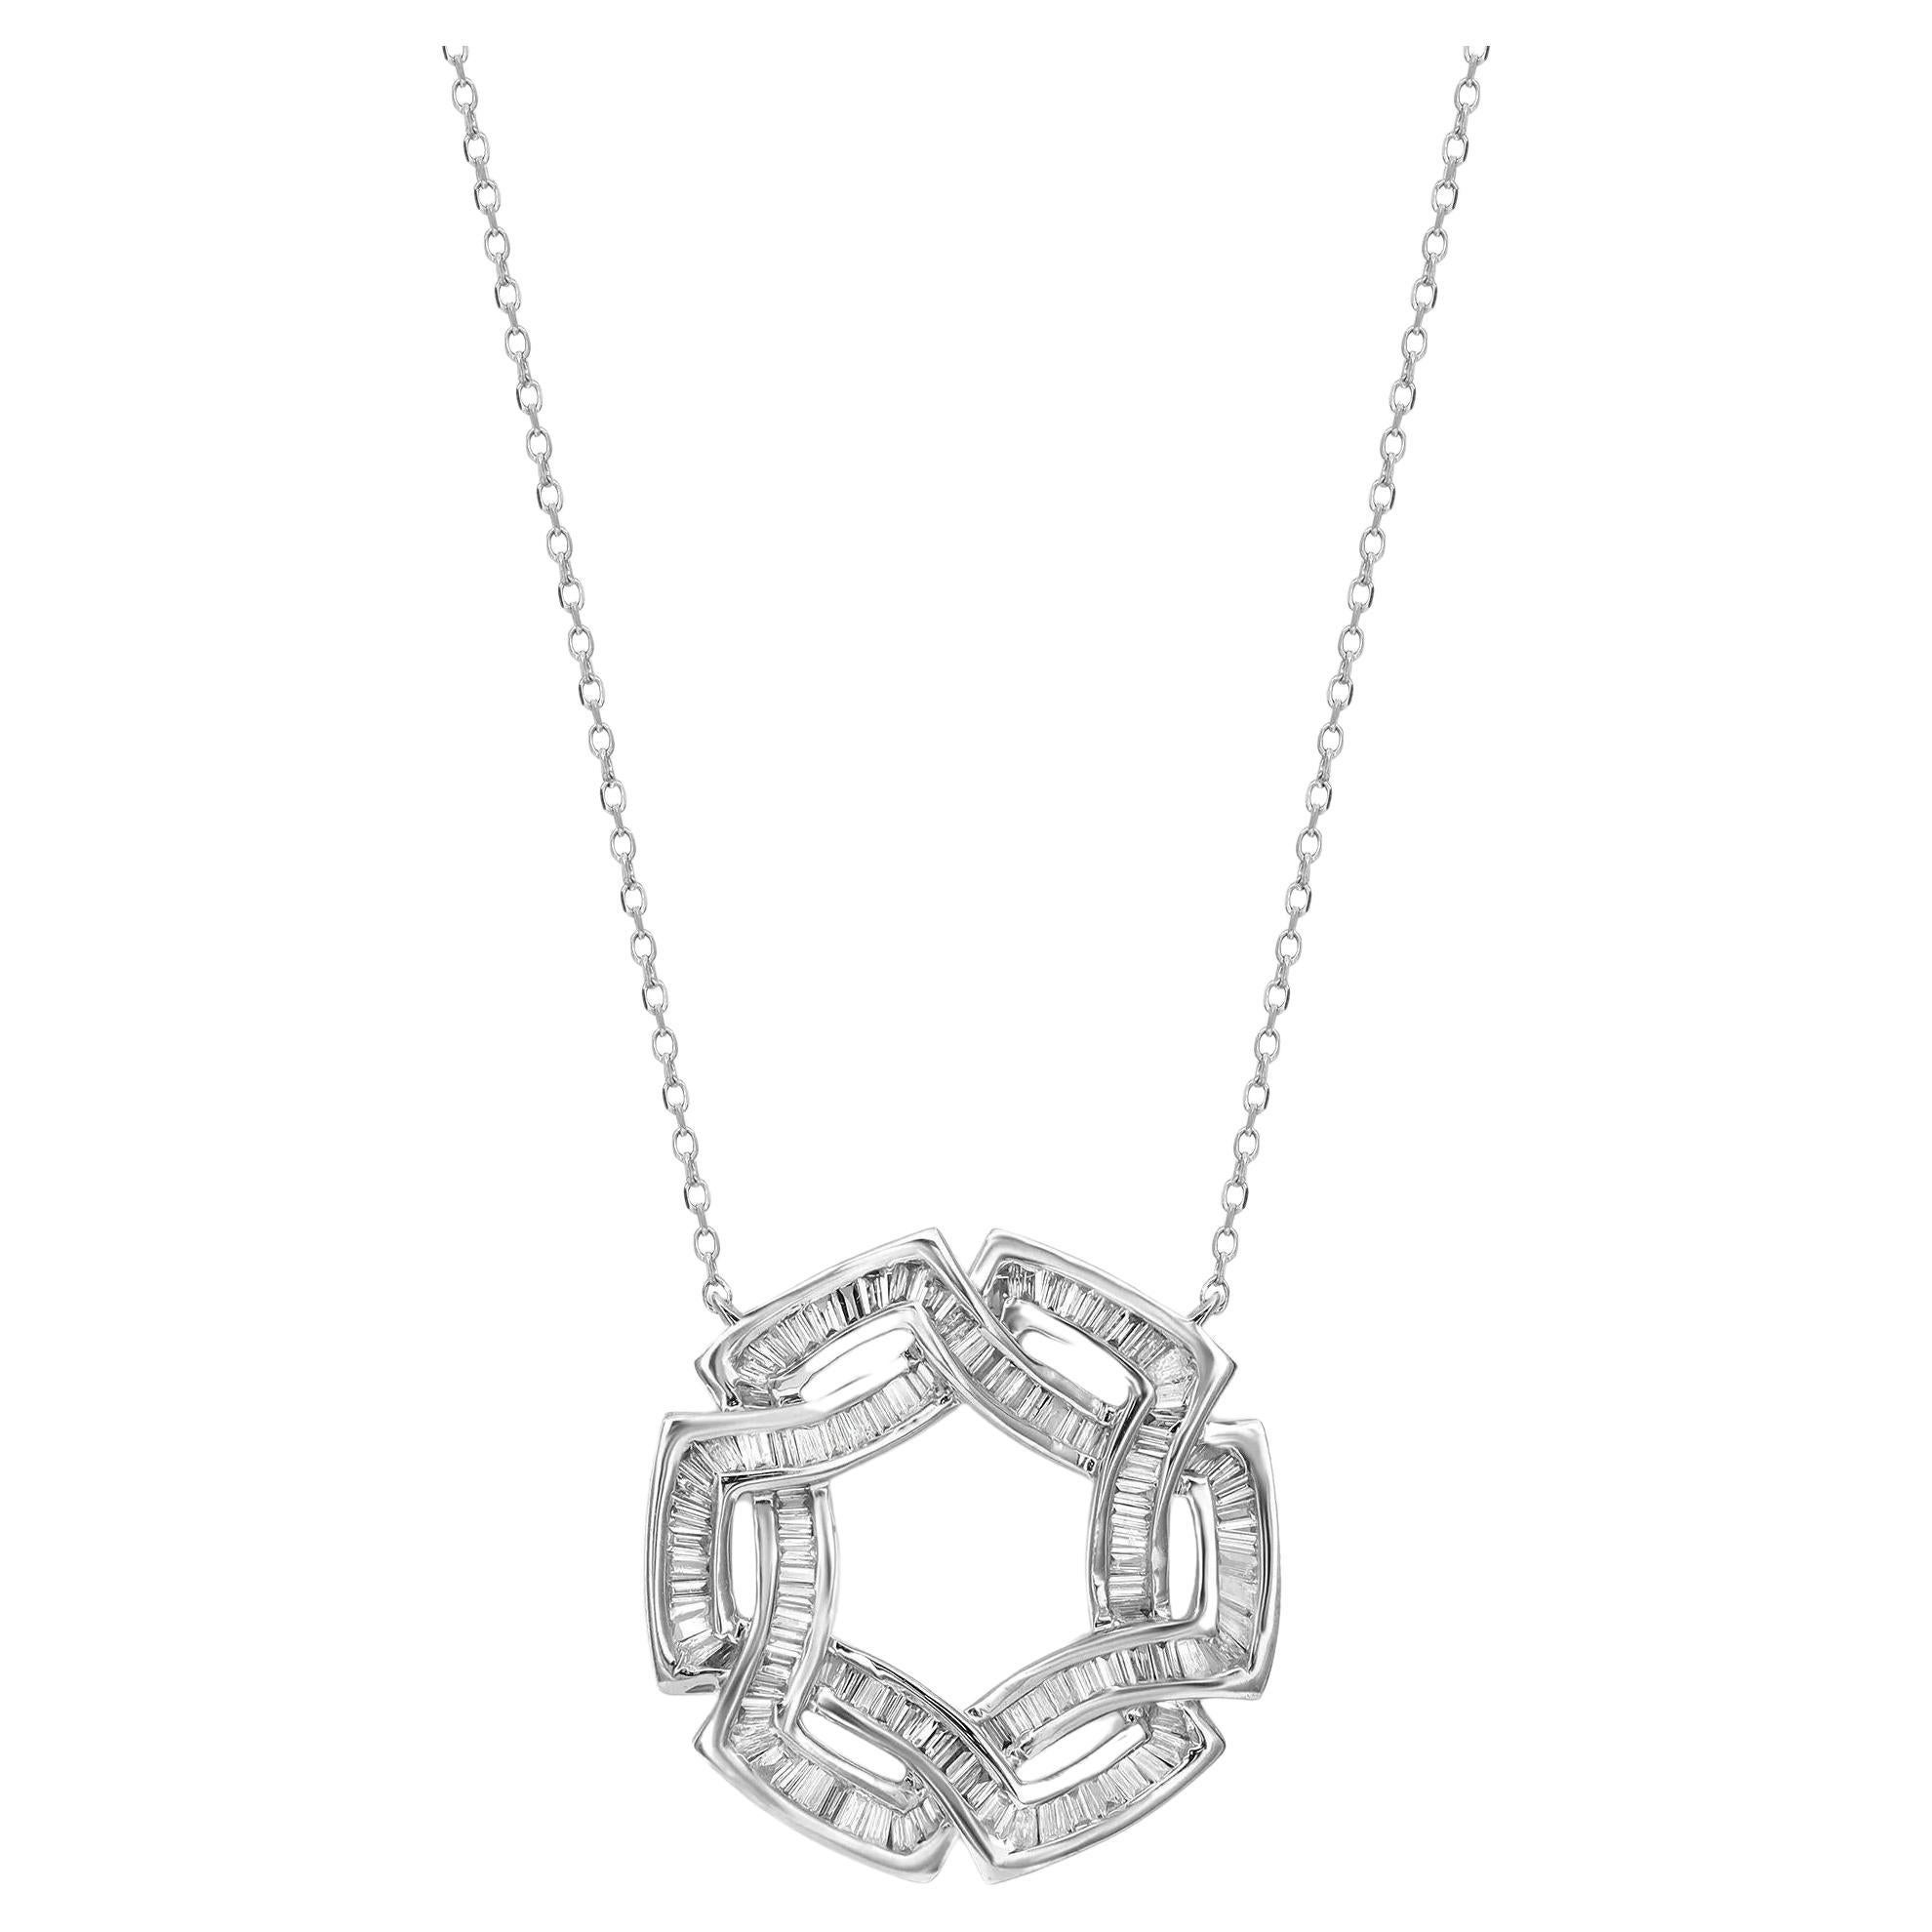 Secret Circles Baguette Diamond Pendant Necklace 14K White Gold 0.60Cttw